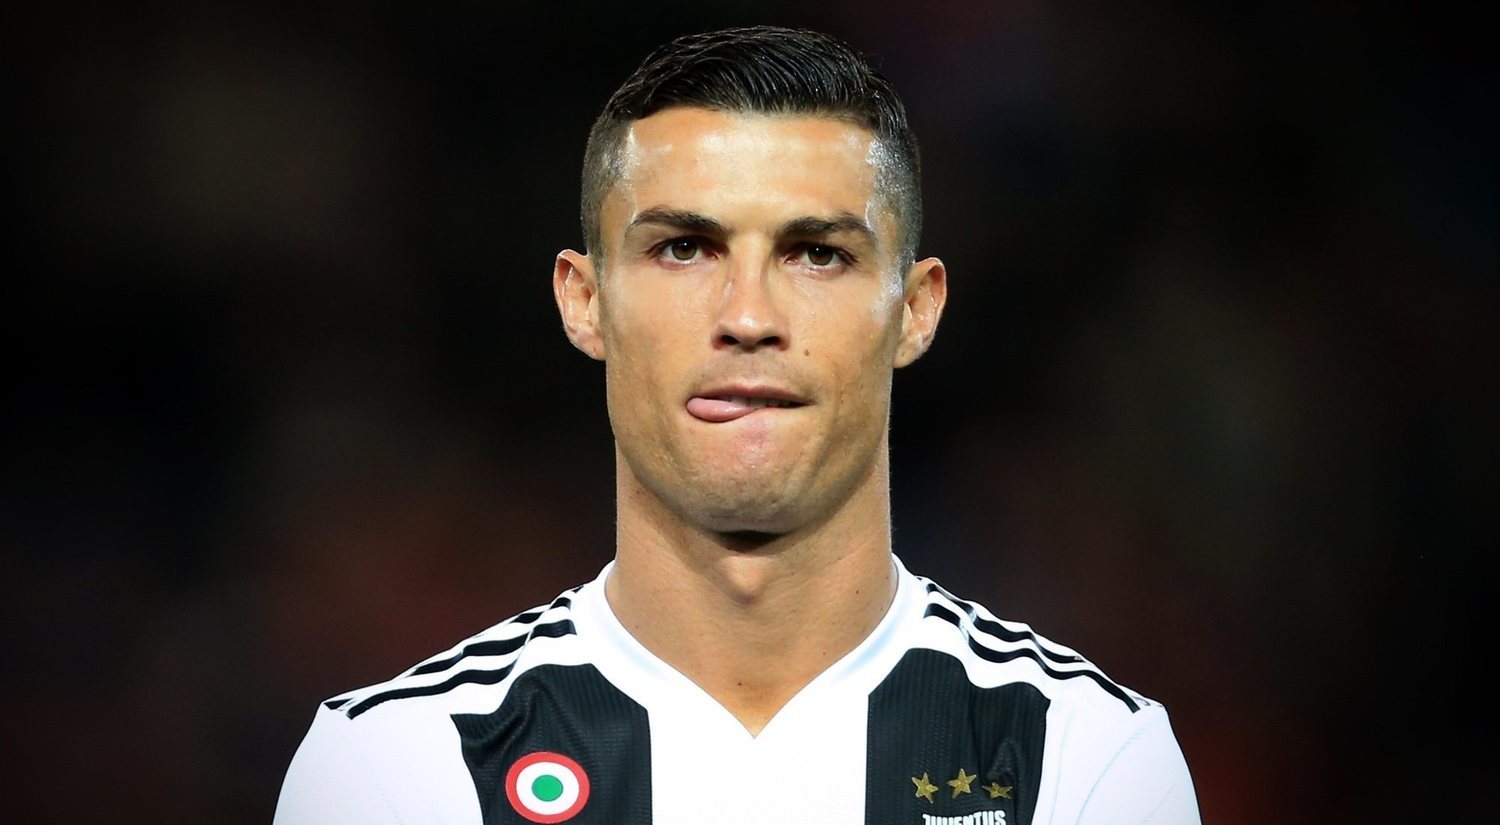 Cristiano Ronaldo: su reloj de 2 millones plantea un debate moral